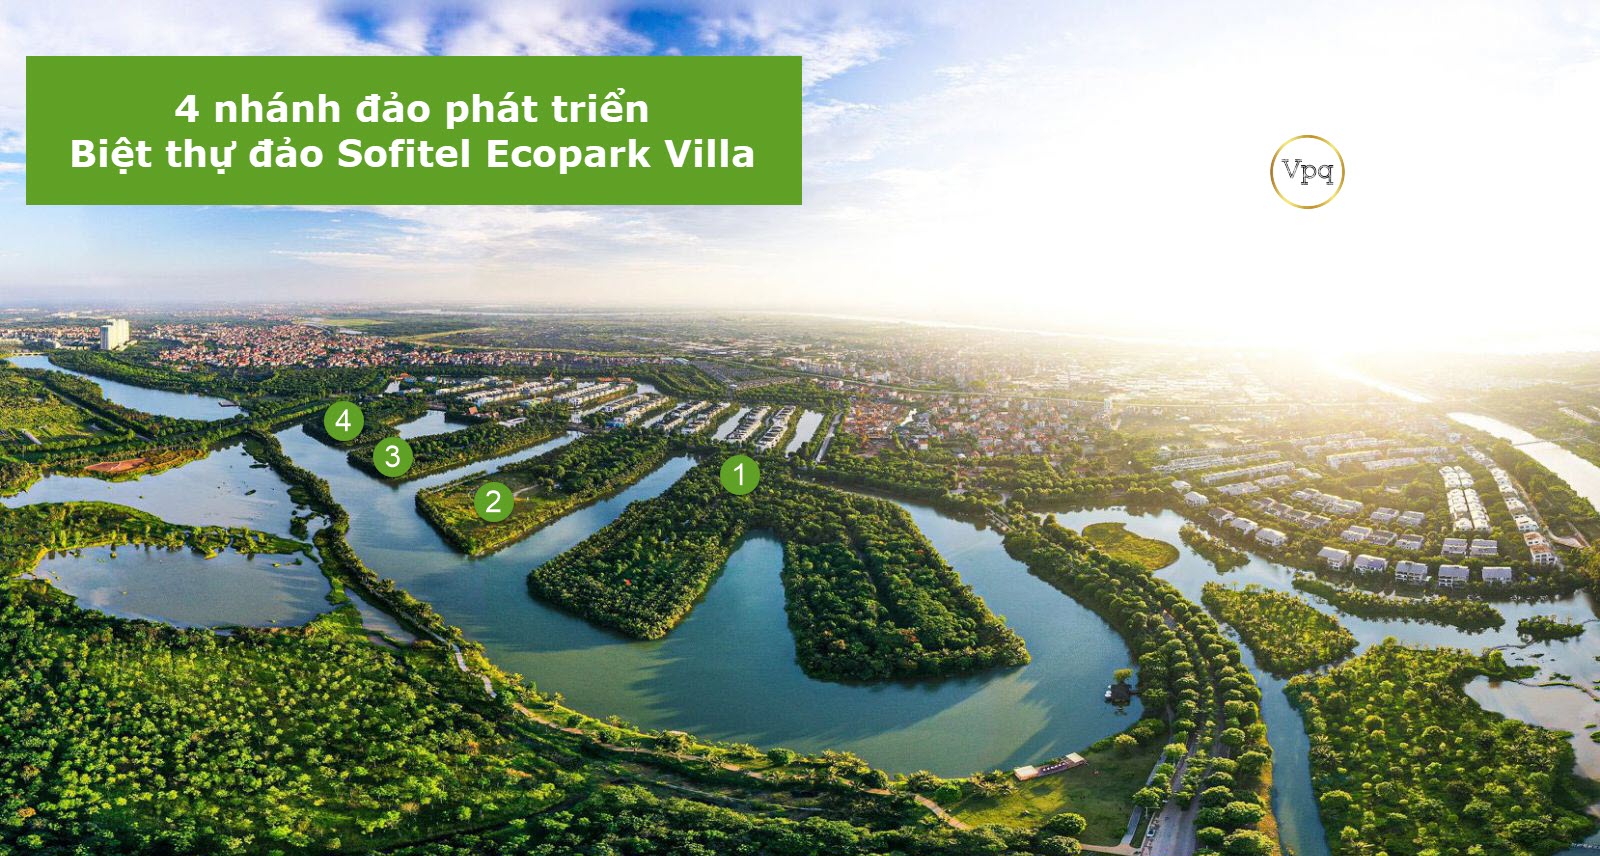 4 nhánh đảo lớn sẽ xây dựng biệt thự đảo Sofitel Ecopark